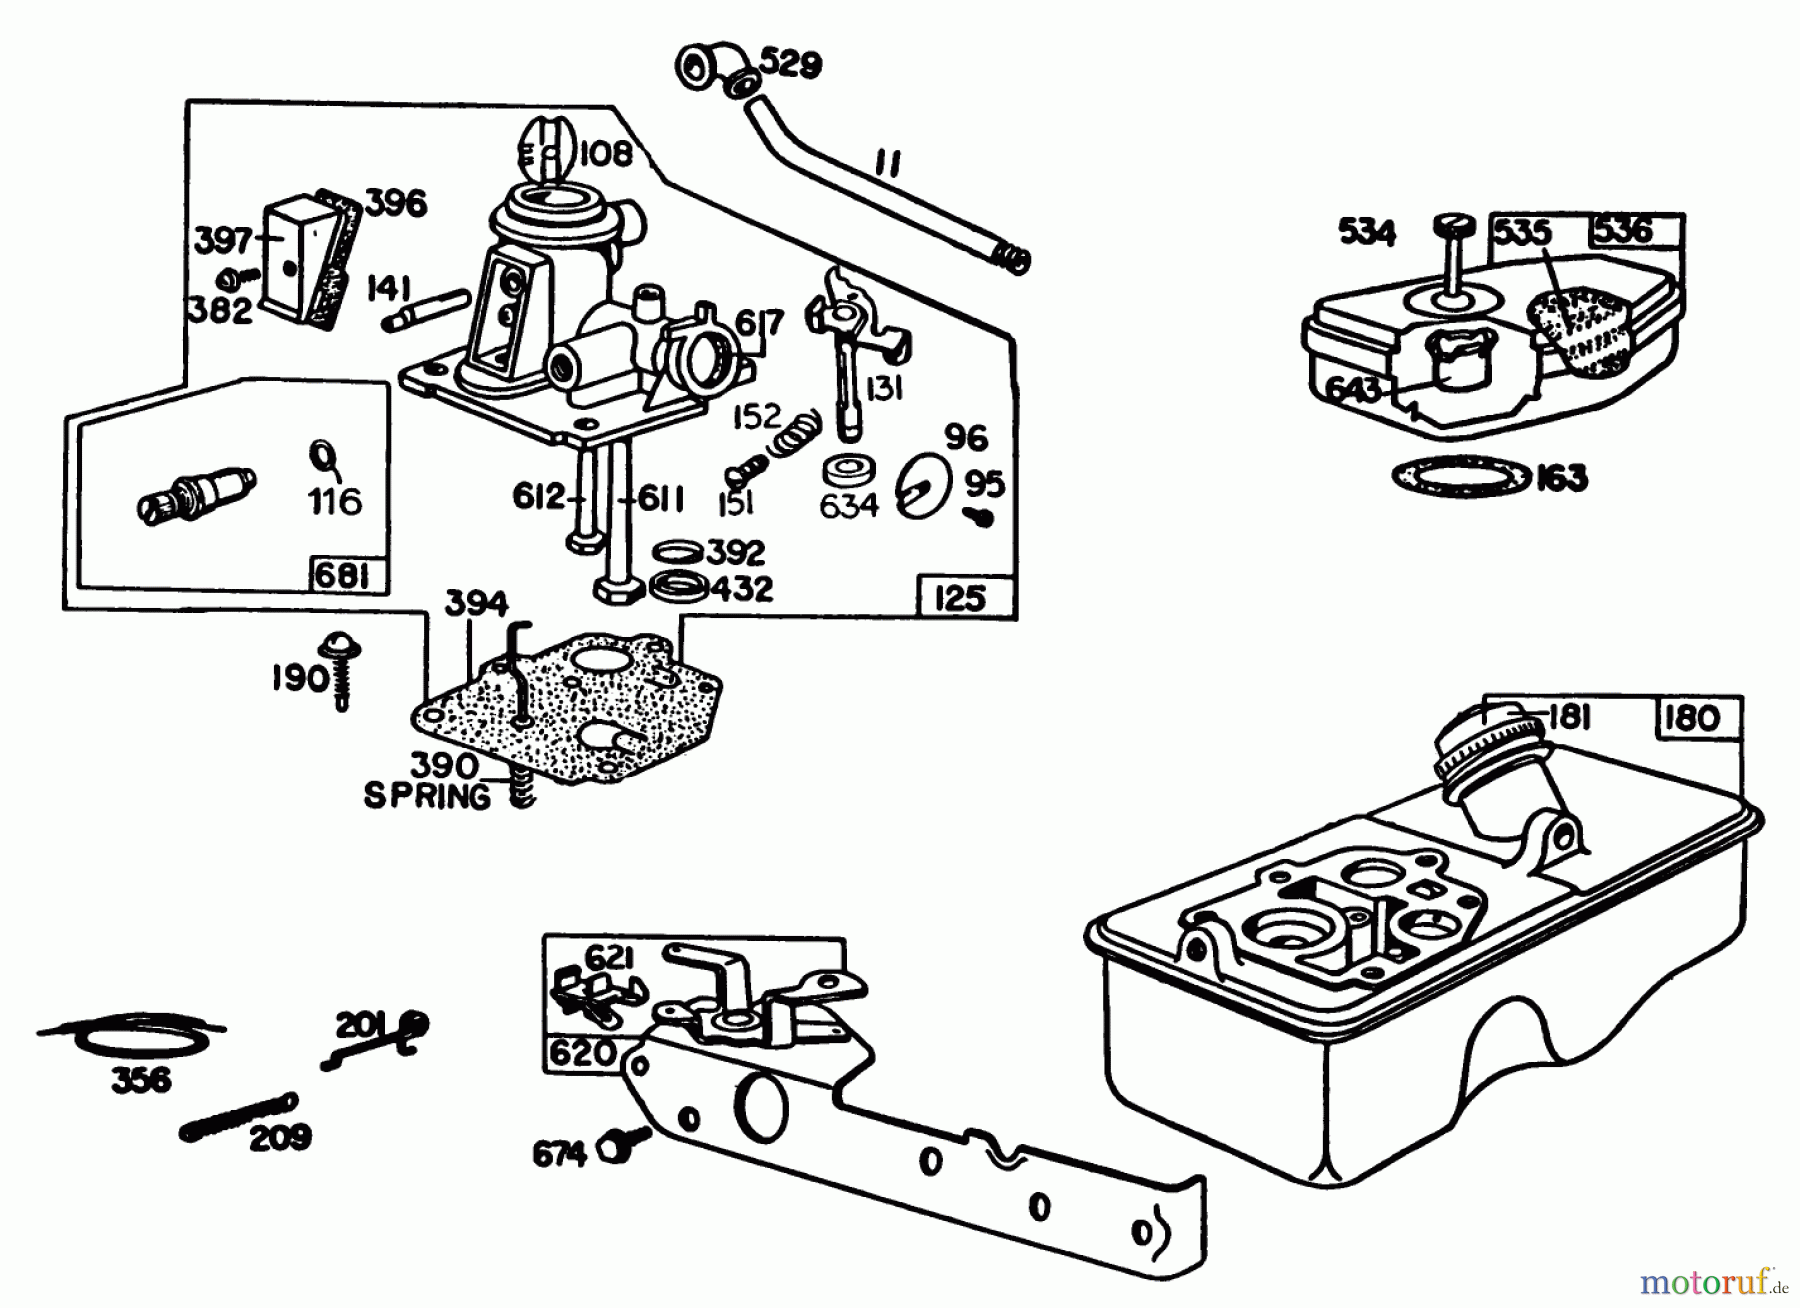  Toro Neu Mowers, Walk-Behind Seite 1 20743C - Toro Lawnmower, 1985 (5000001-5999999) ENGINE BRIGGS & STRATTON MODEL 92908-5205-01 #1